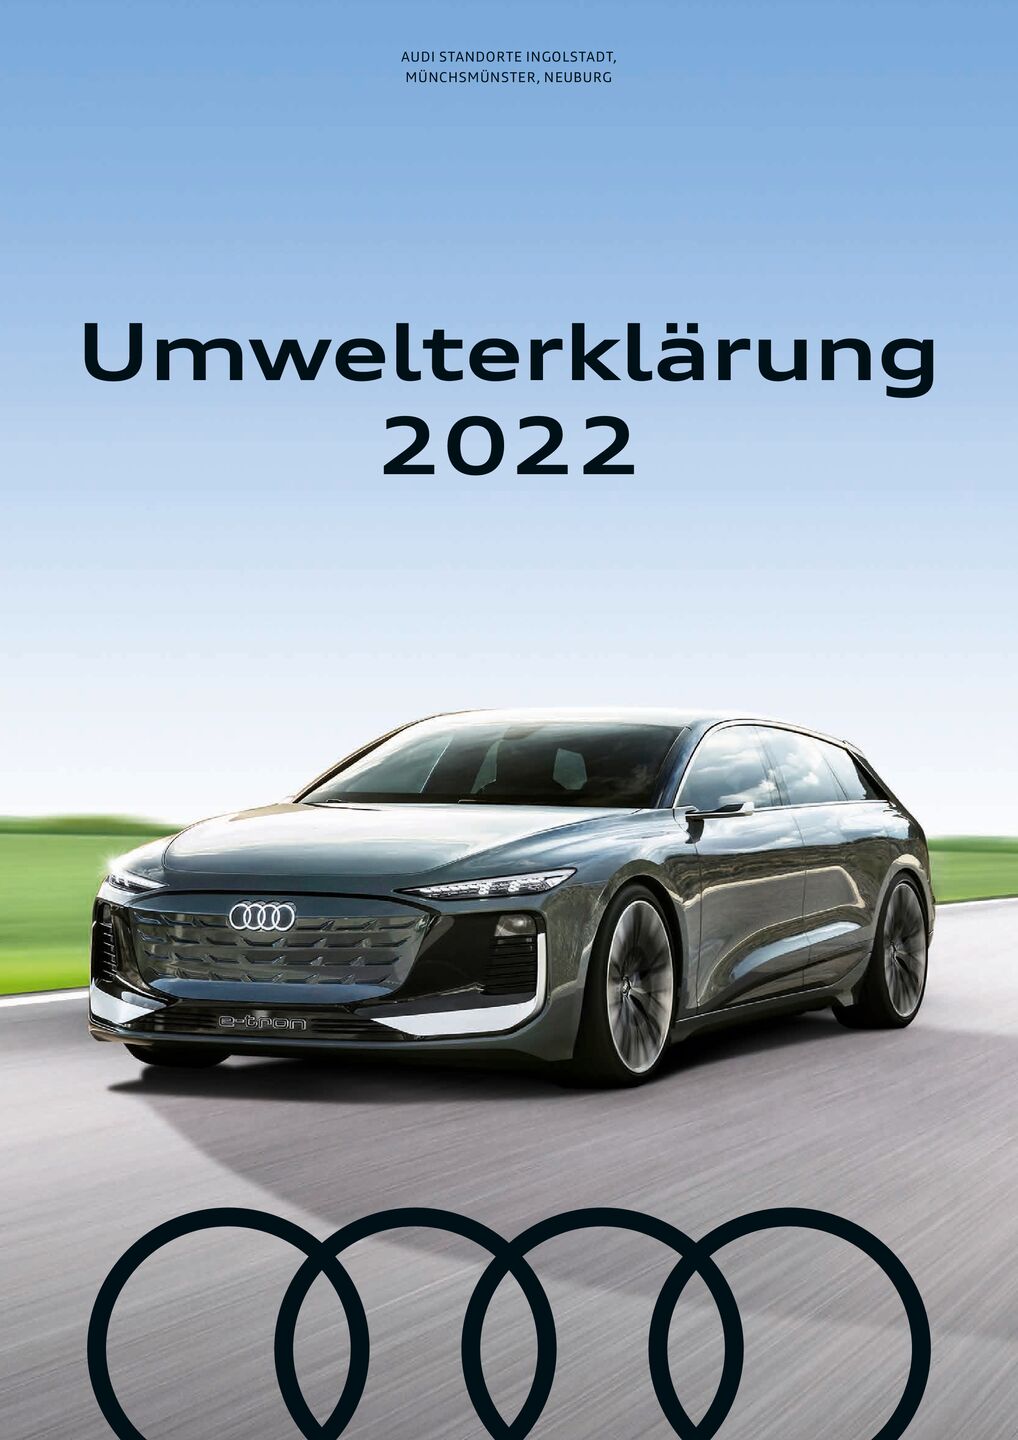 Umwelterklärung der AUDI AG 2022 / Audi-Standort Ingolstadt, der Audi-Fertigung Münchsmünster und Audi Neuburg